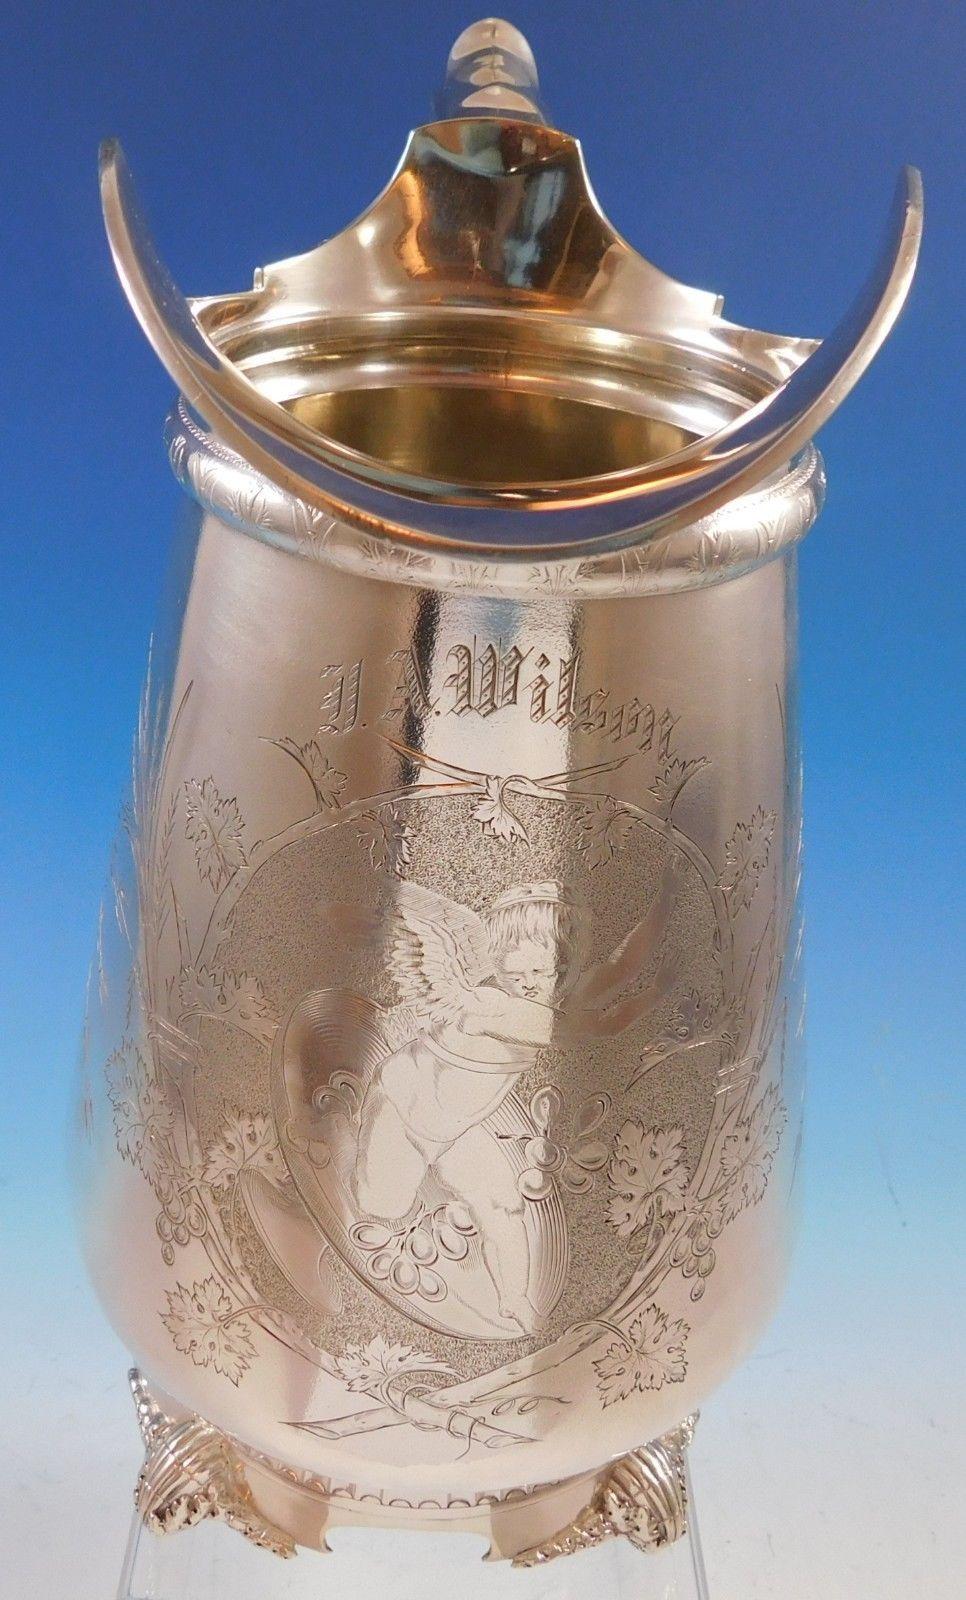 Gorham
Gorham Sterling Silber Wasserkrug mit einer großen detaillierten Gravur eines geflügelten Engels und Trauben. Dieses Stück misst 11 x 9, wiegt 34,3 Feinunzen und ist monogrammiert (siehe Fotos). Sie ist mit der Nummer 785 und der